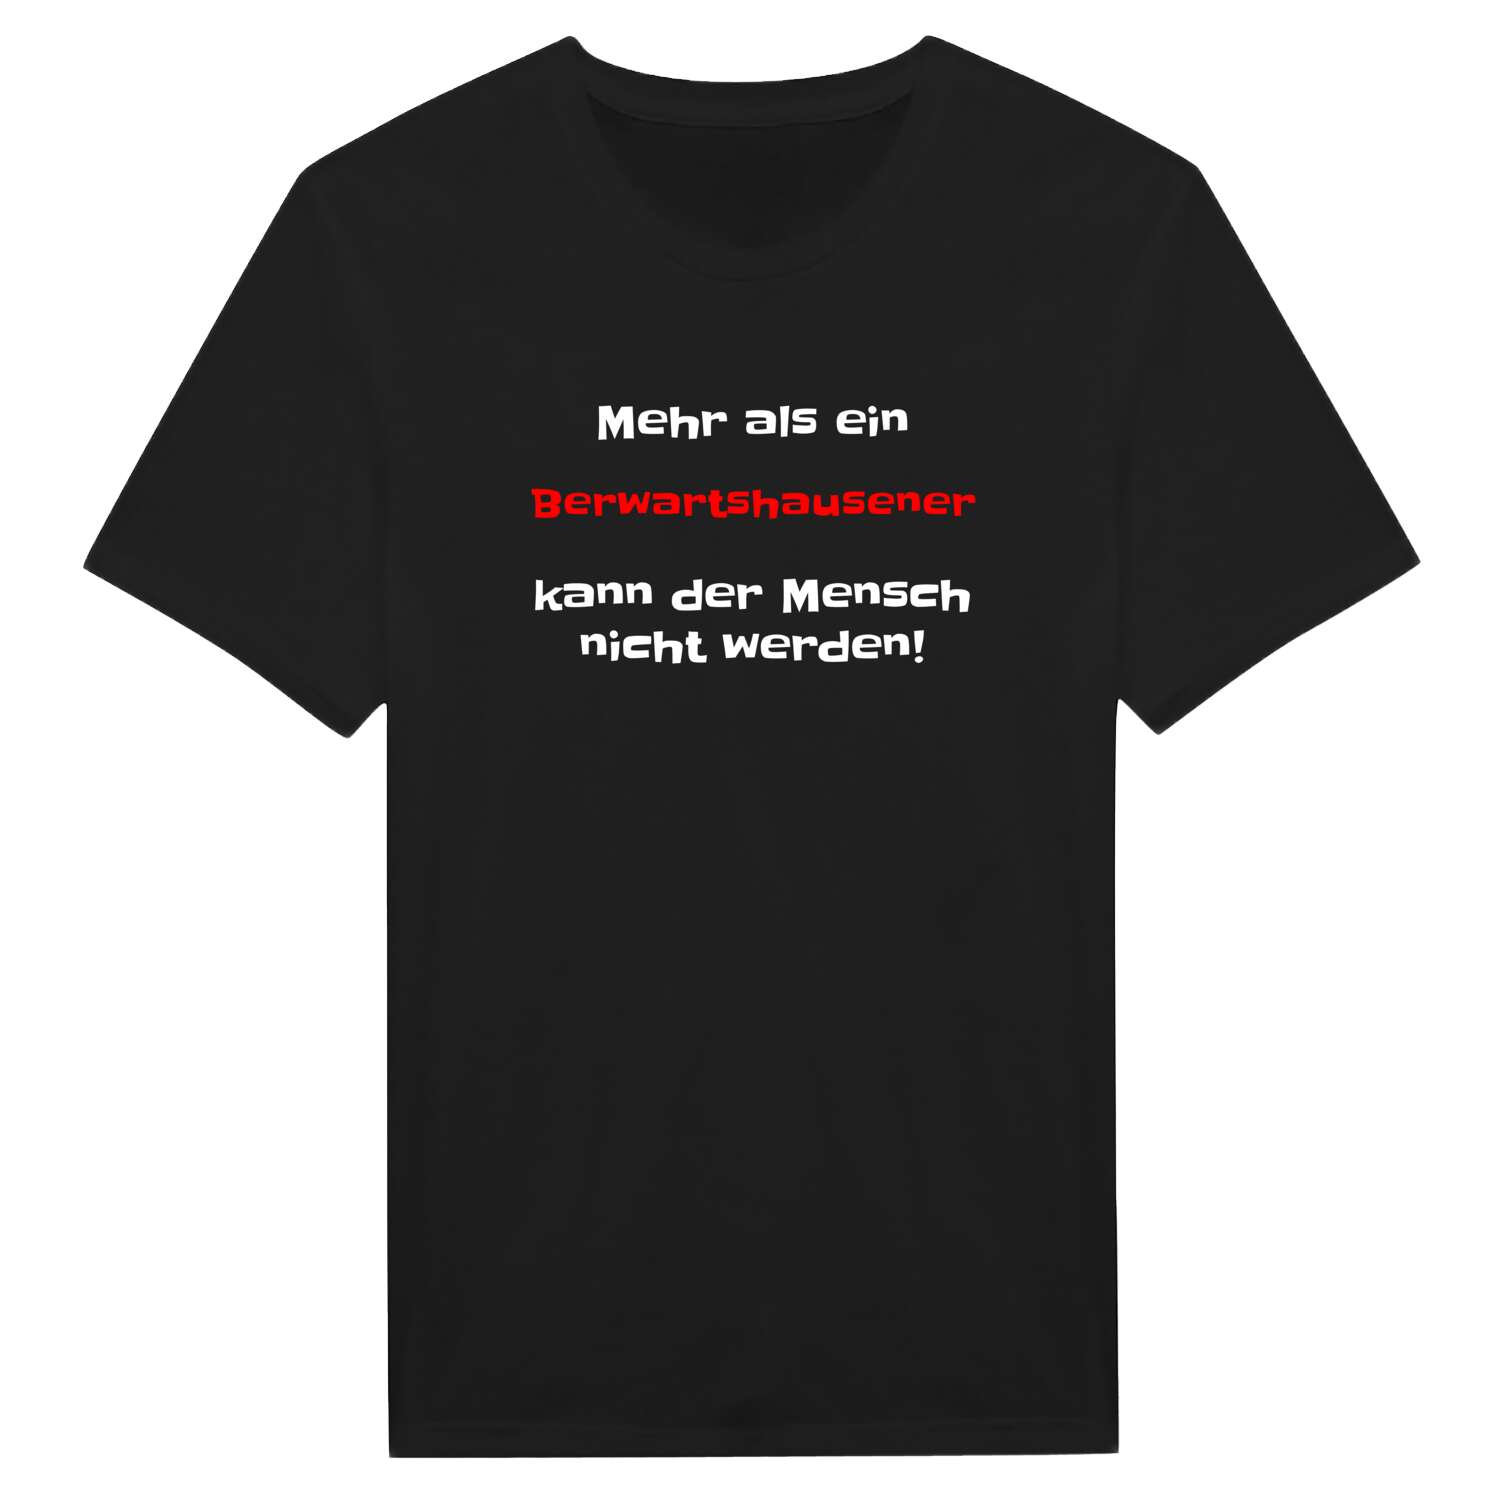 Berwartshausen T-Shirt »Mehr als ein«